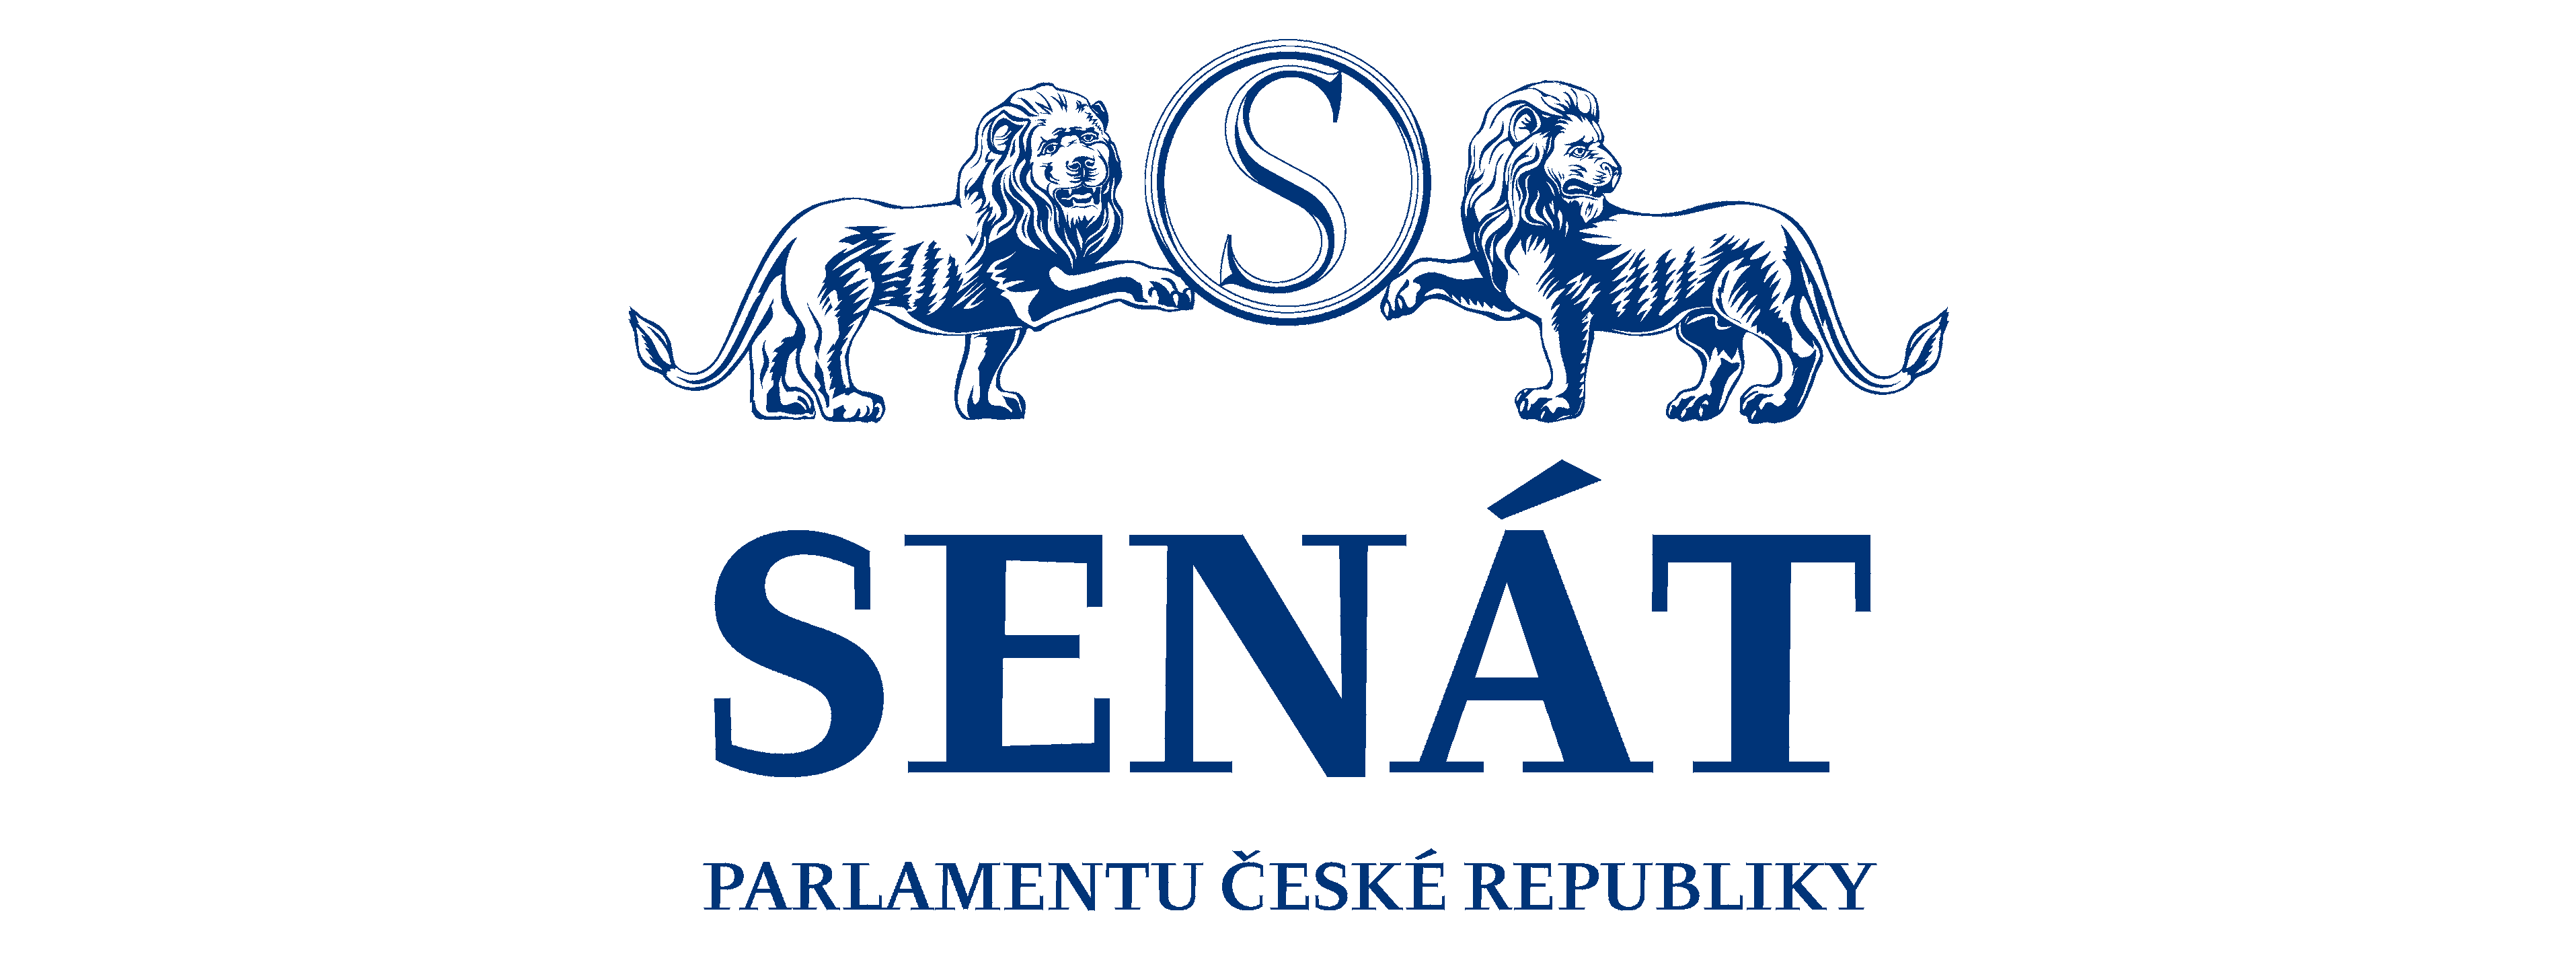 facebook senatni logo